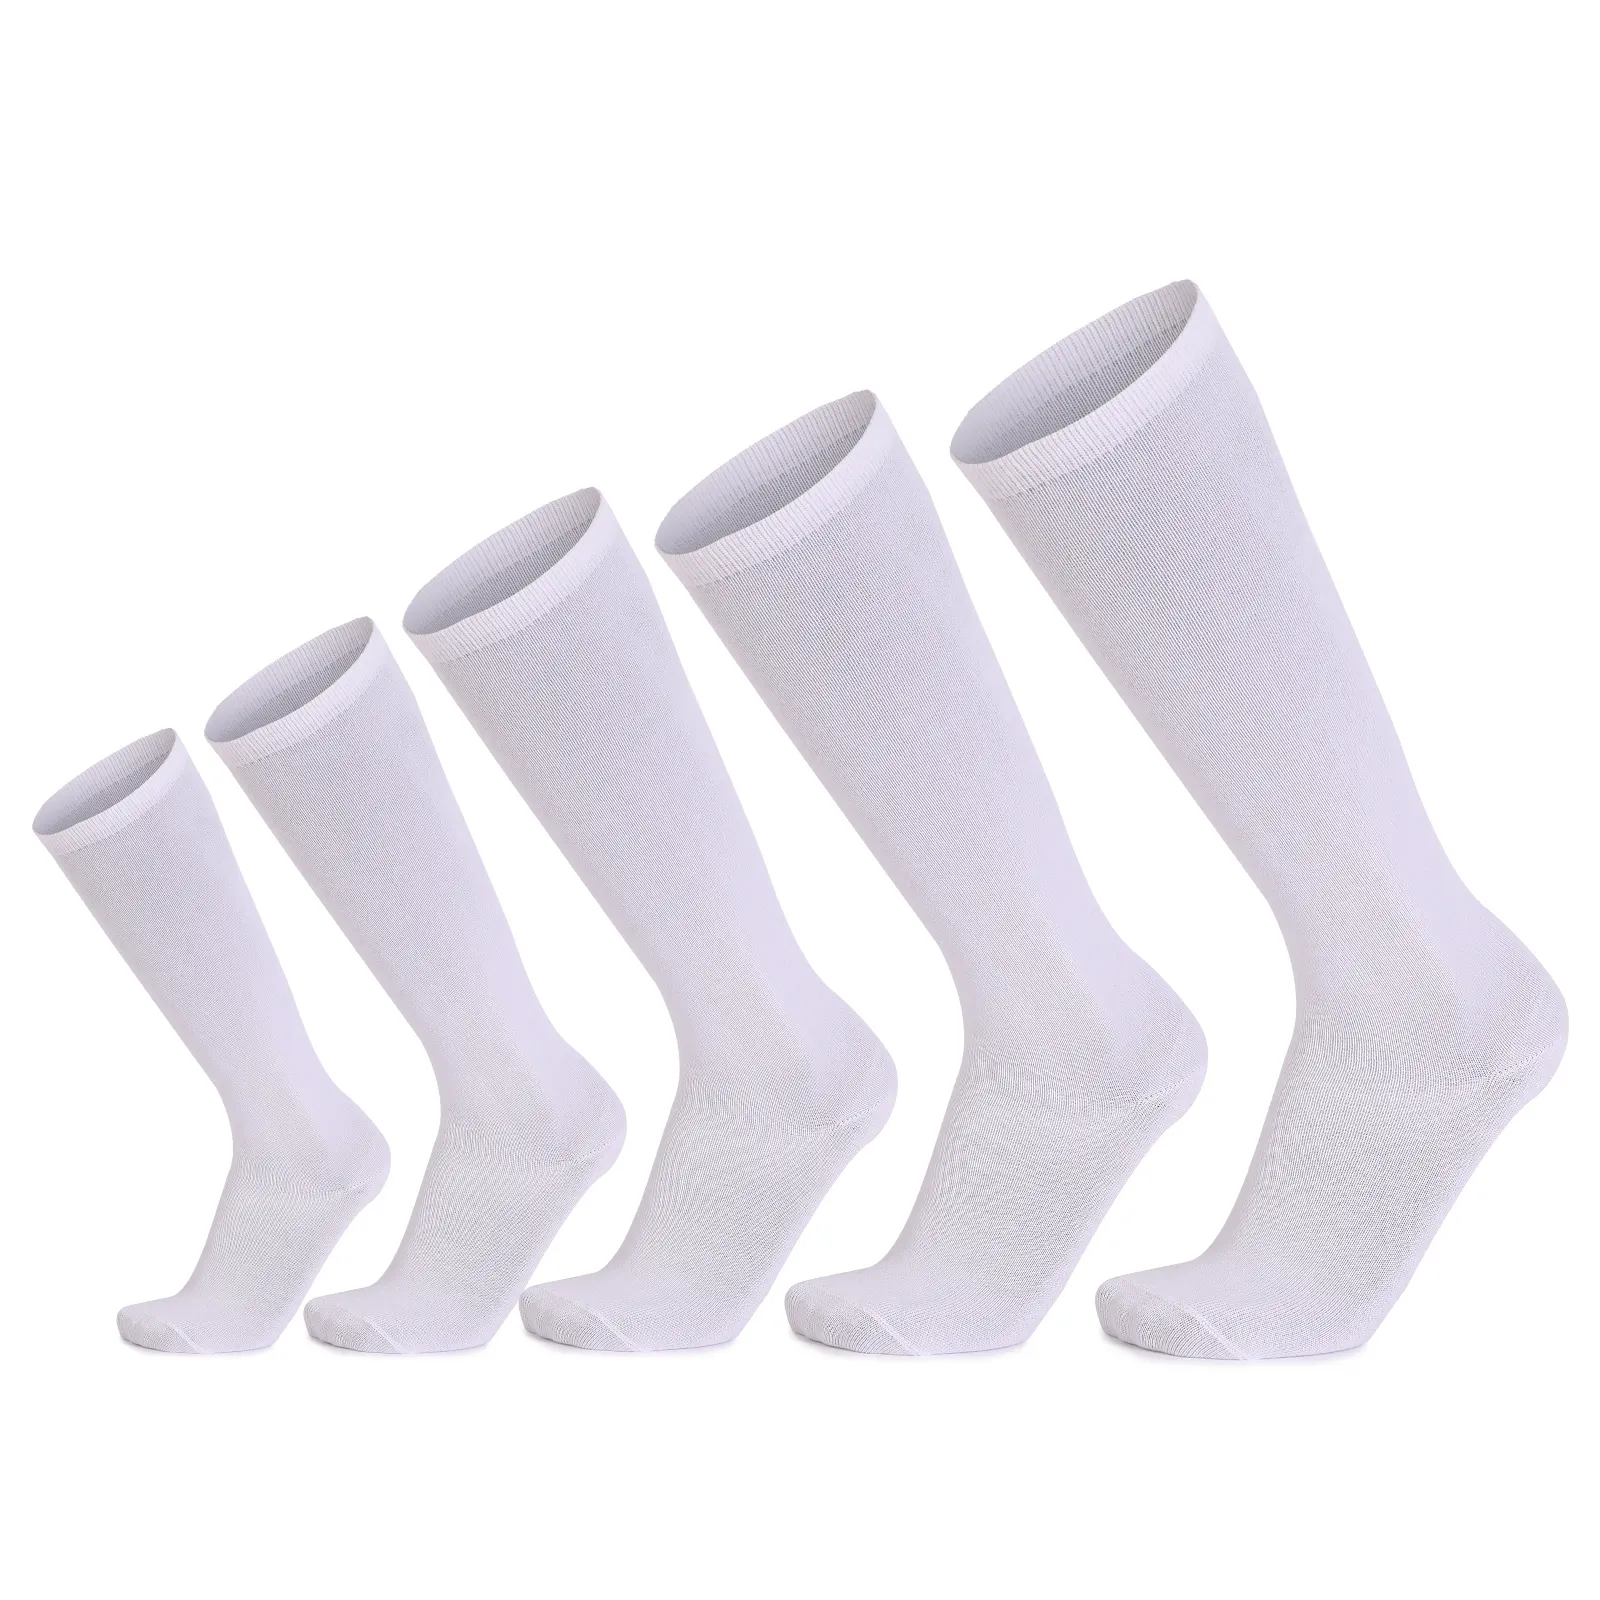 5 Größen schlichte weiße Knies trümpfe aus Polyester-Baumwolle aus weißen Röhren socken